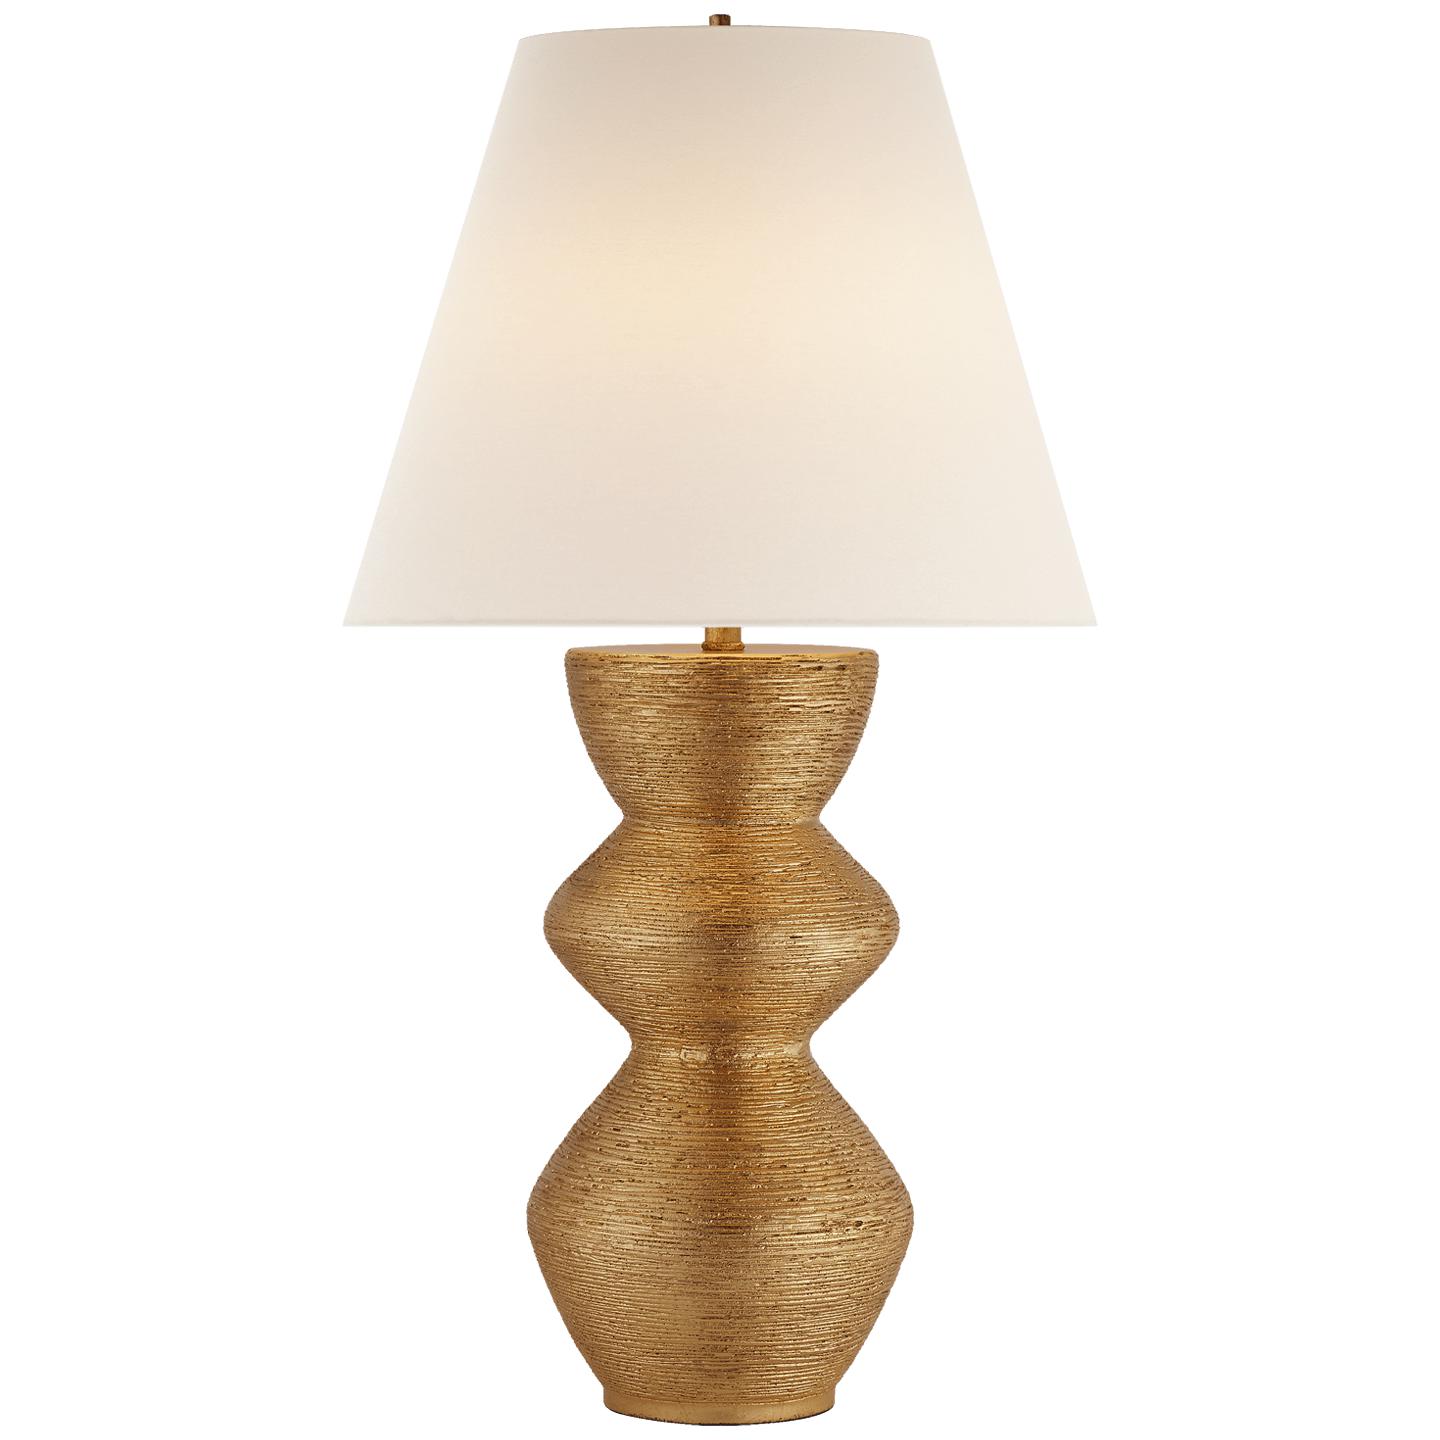 Купить Настольная лампа Utopia Table Lamp в интернет-магазине roooms.ru